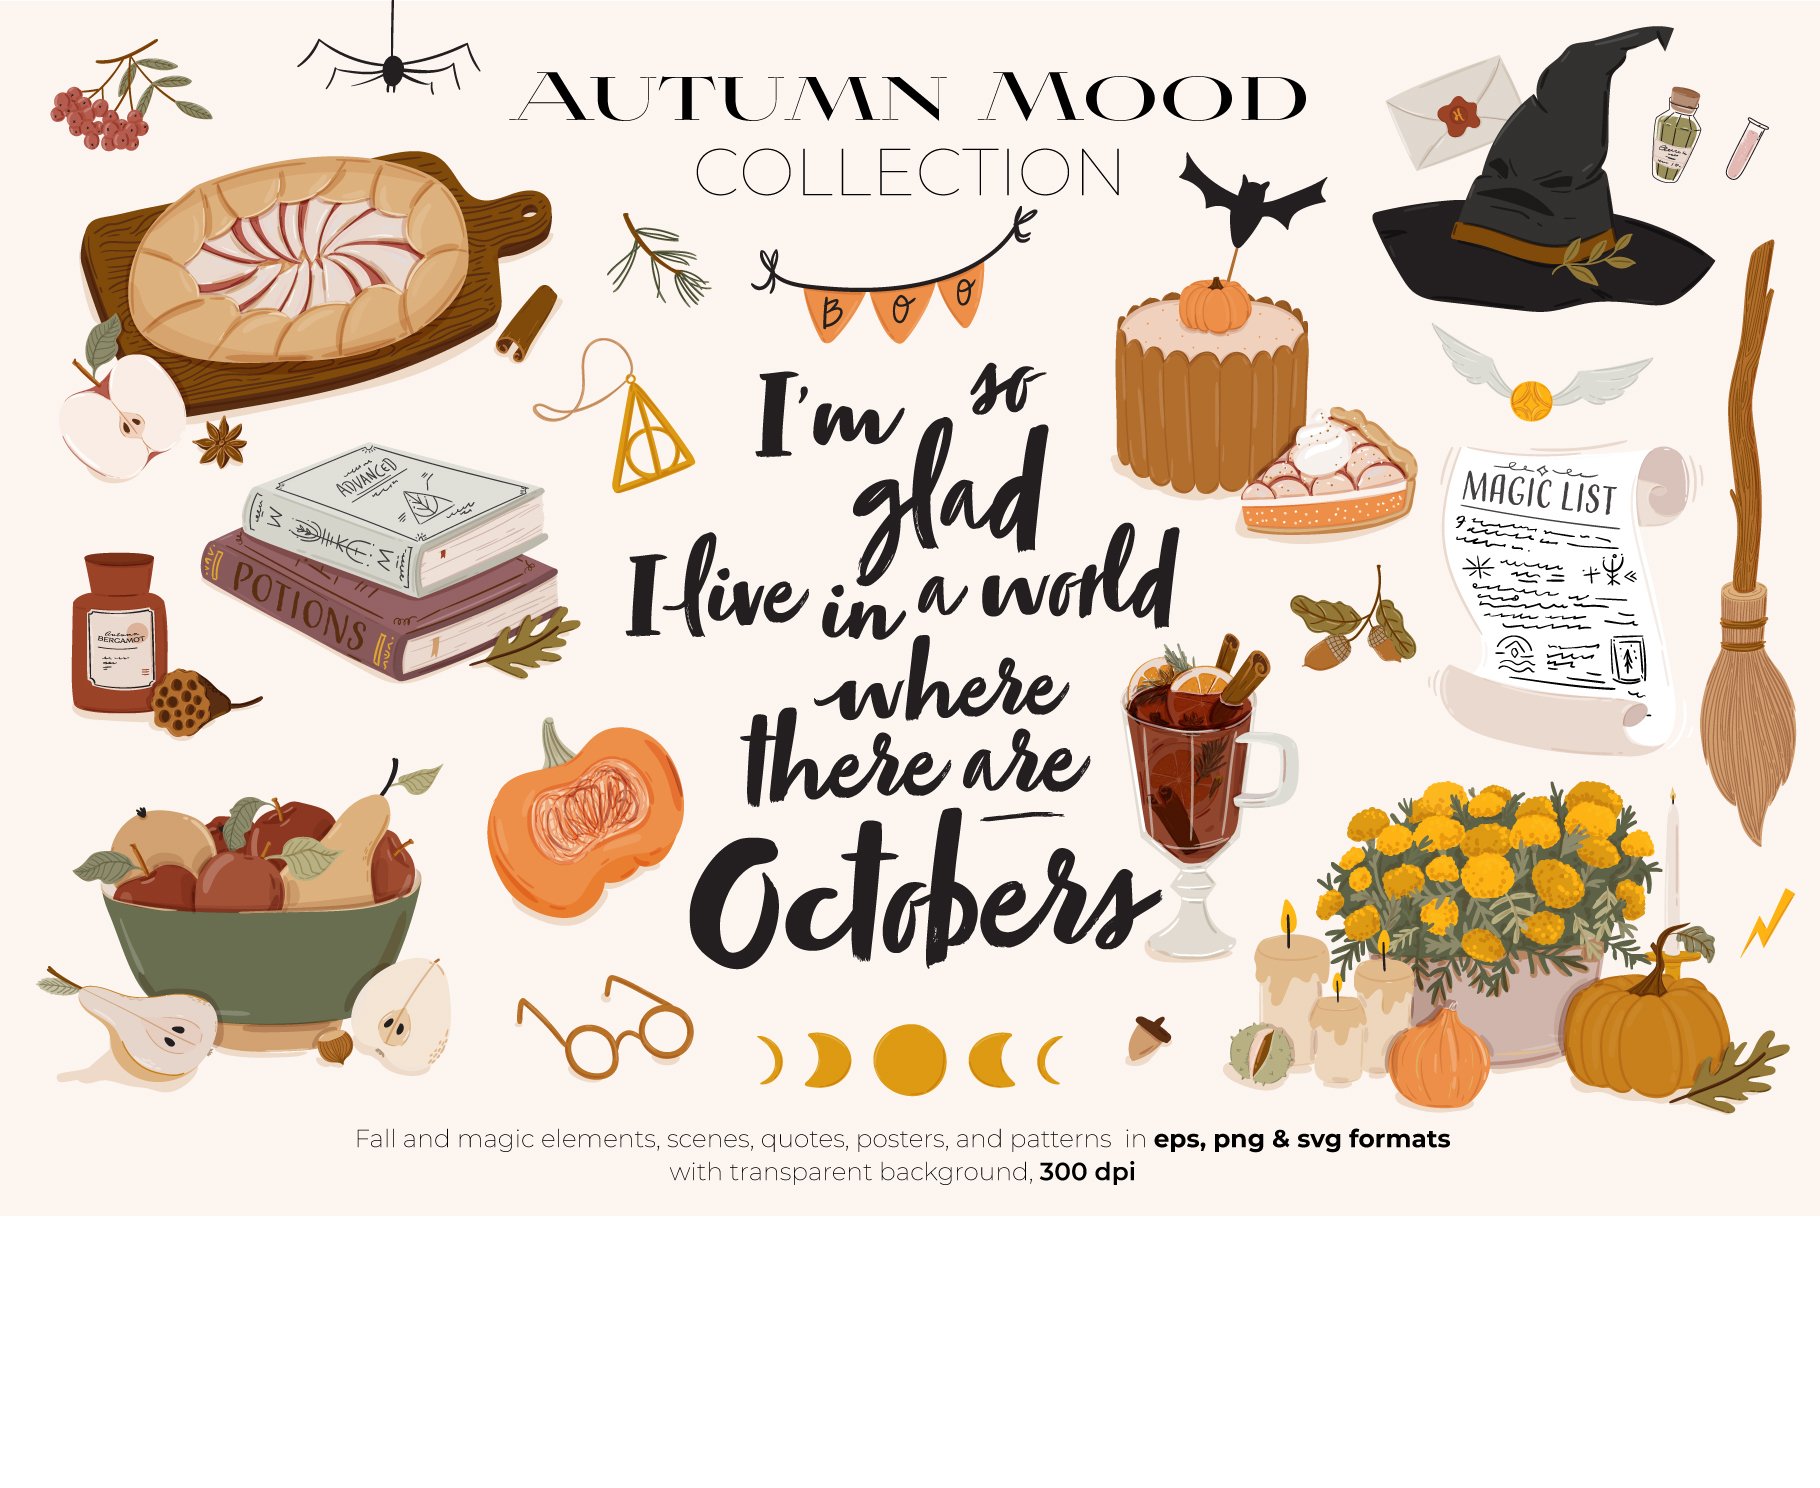 Magic Autumn, Cozy Fall Mood cover image.